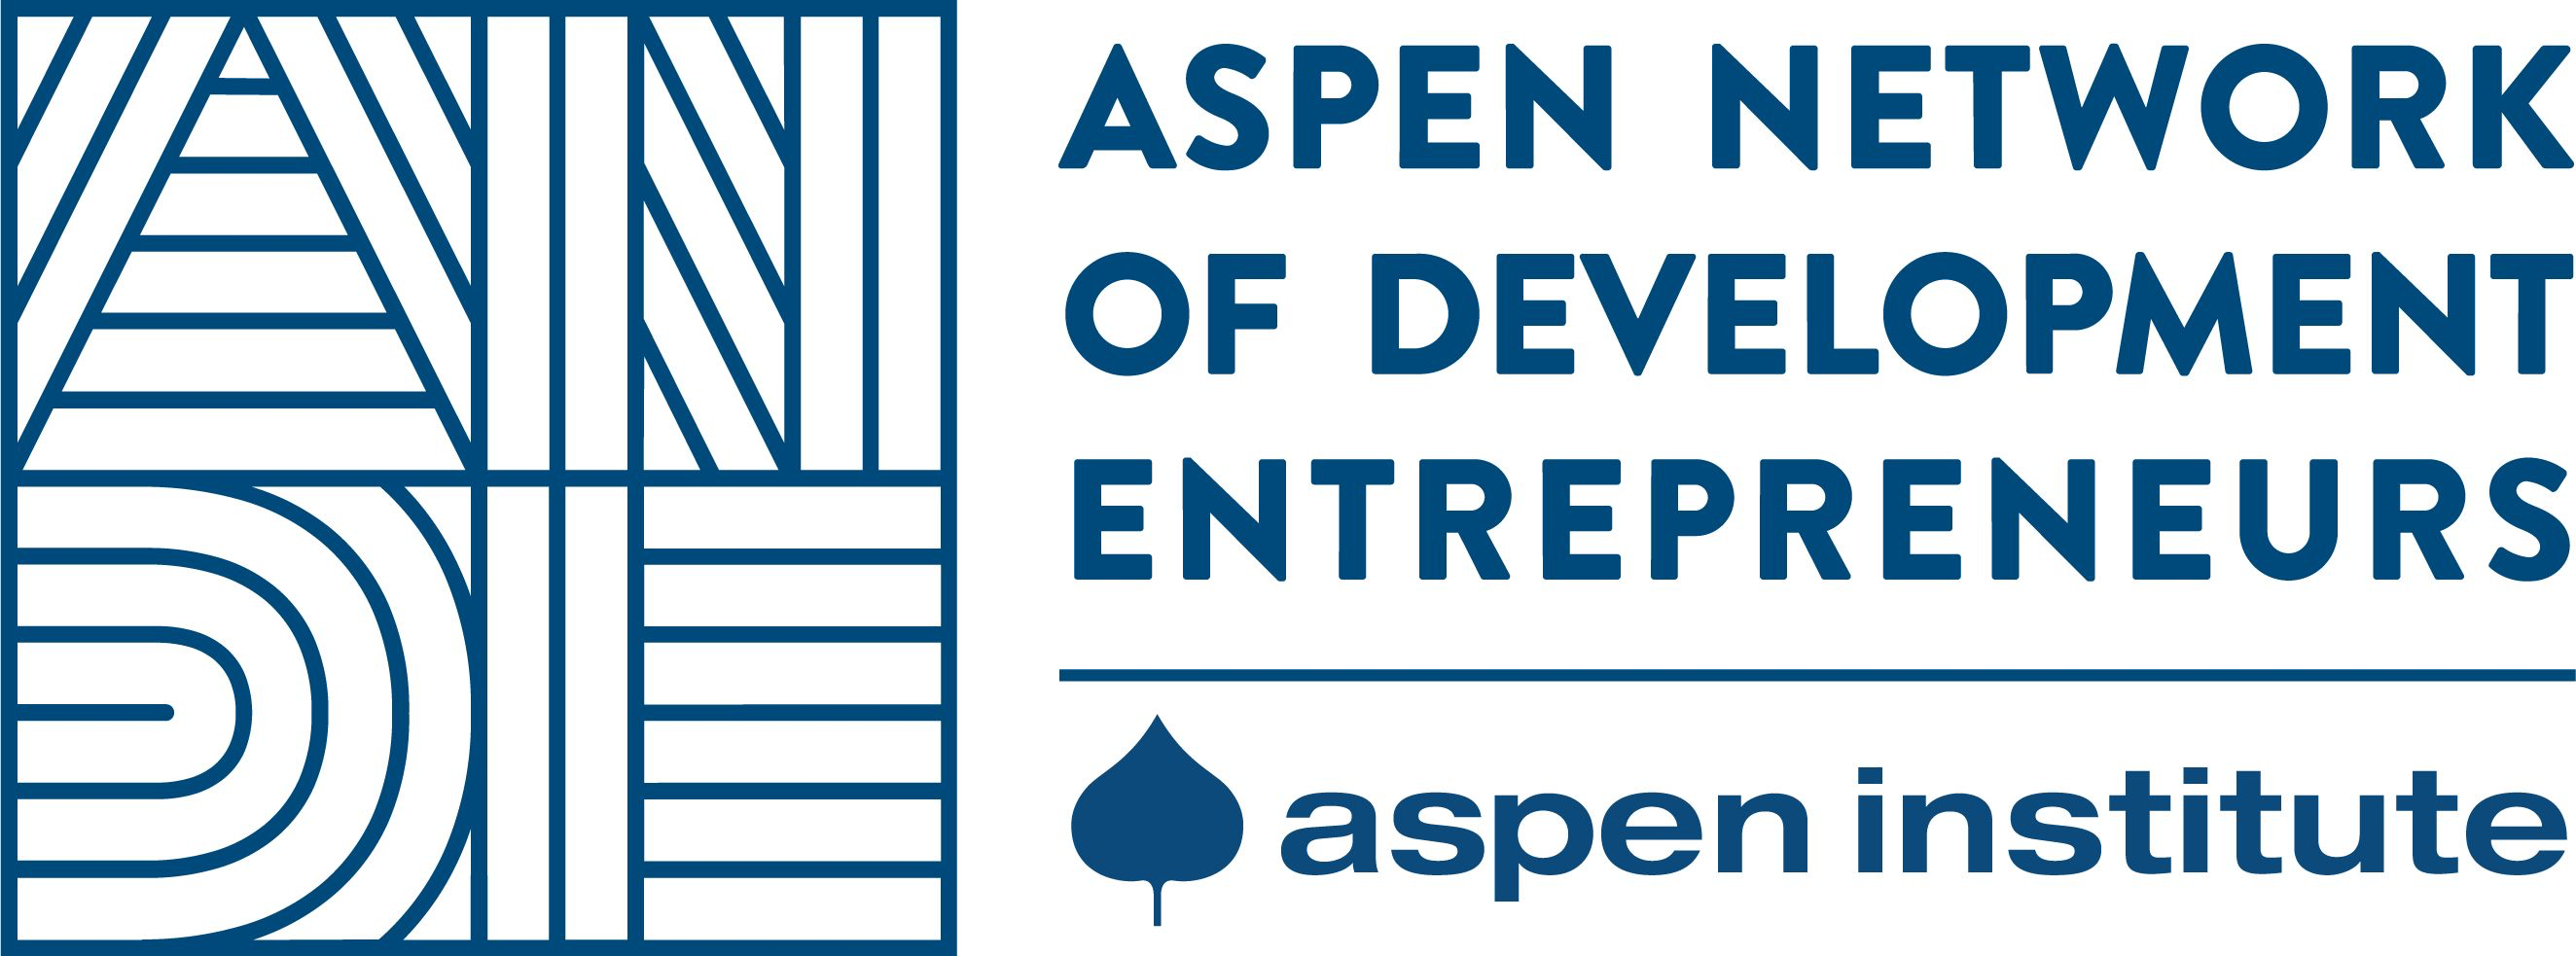 Aspen Institute ANDE